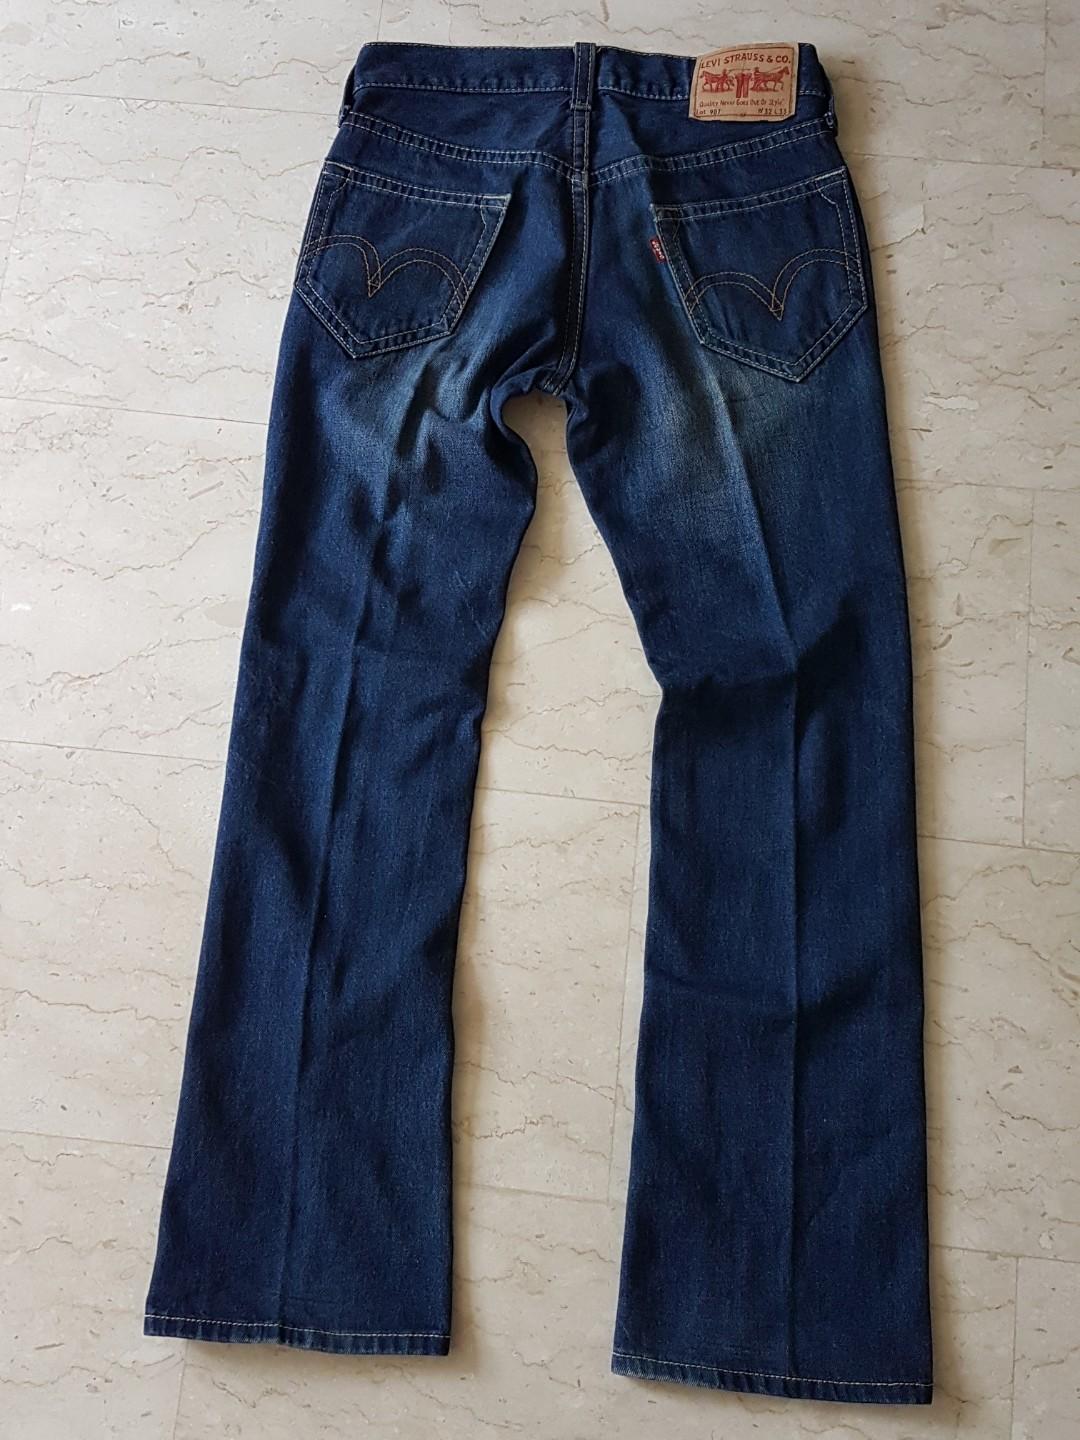 Levis 907 Bootcut Blue Denim Jeans, Men's Fashion, Bottoms, Jeans on ...